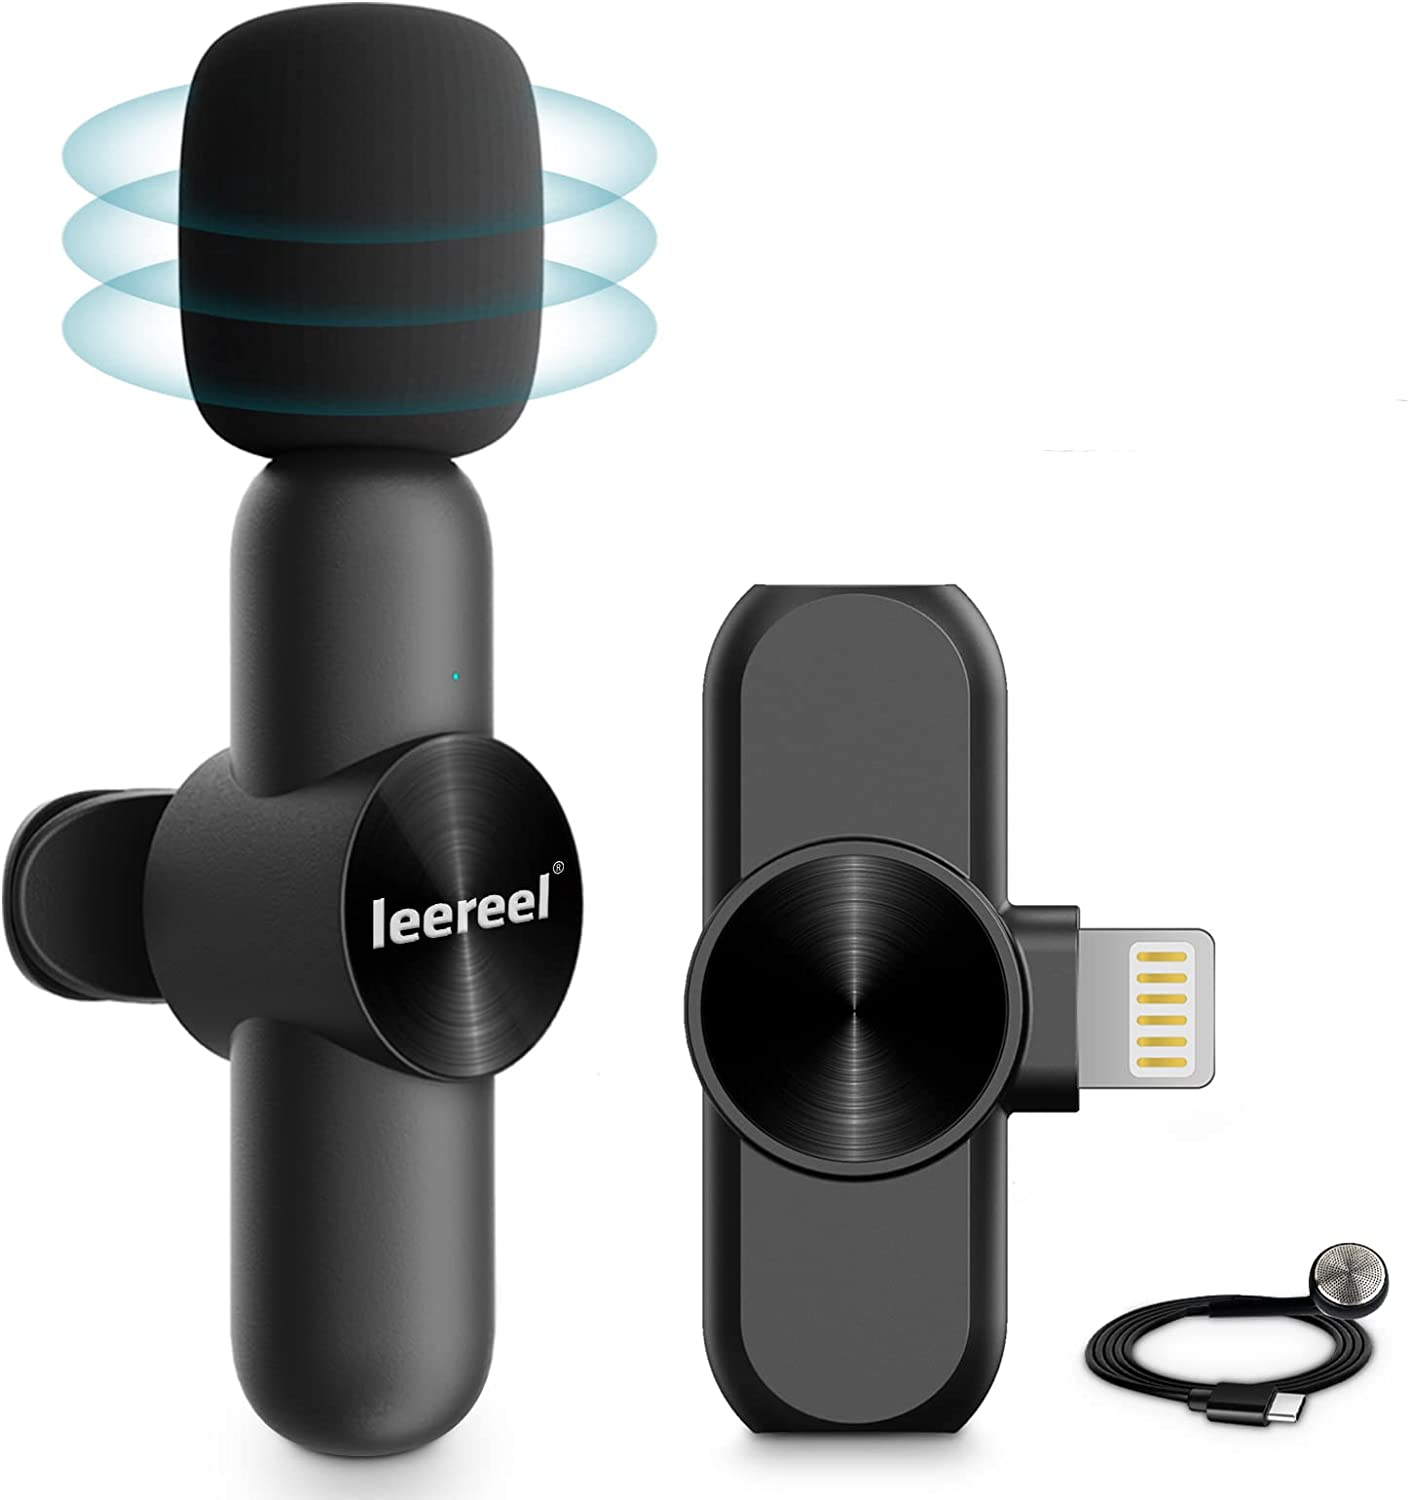 Leereel Plug-Play Wireless Lapel Mic